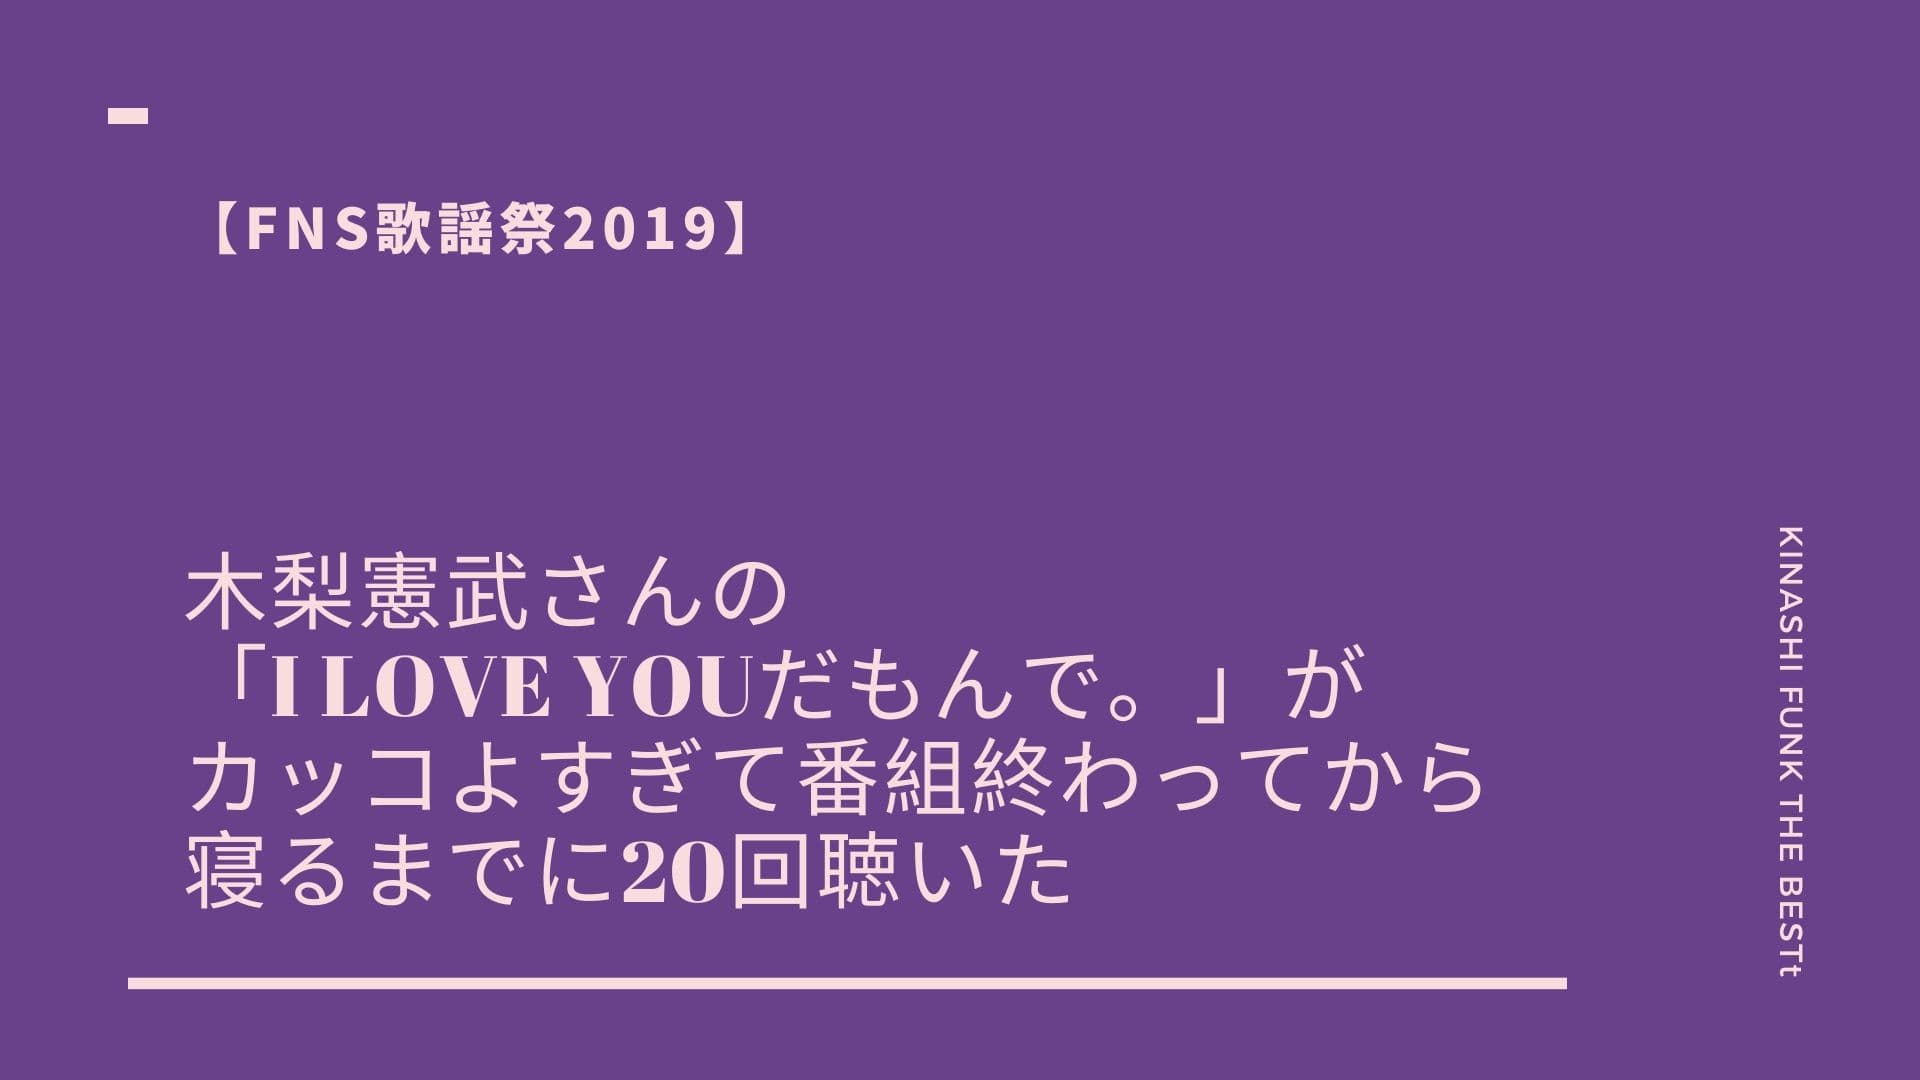 【FNS歌謡祭2019】木梨憲武さんの「I LOVE YOUだもんで。」がカッコよすぎて番組終わってから寝るまでに20回聴いた